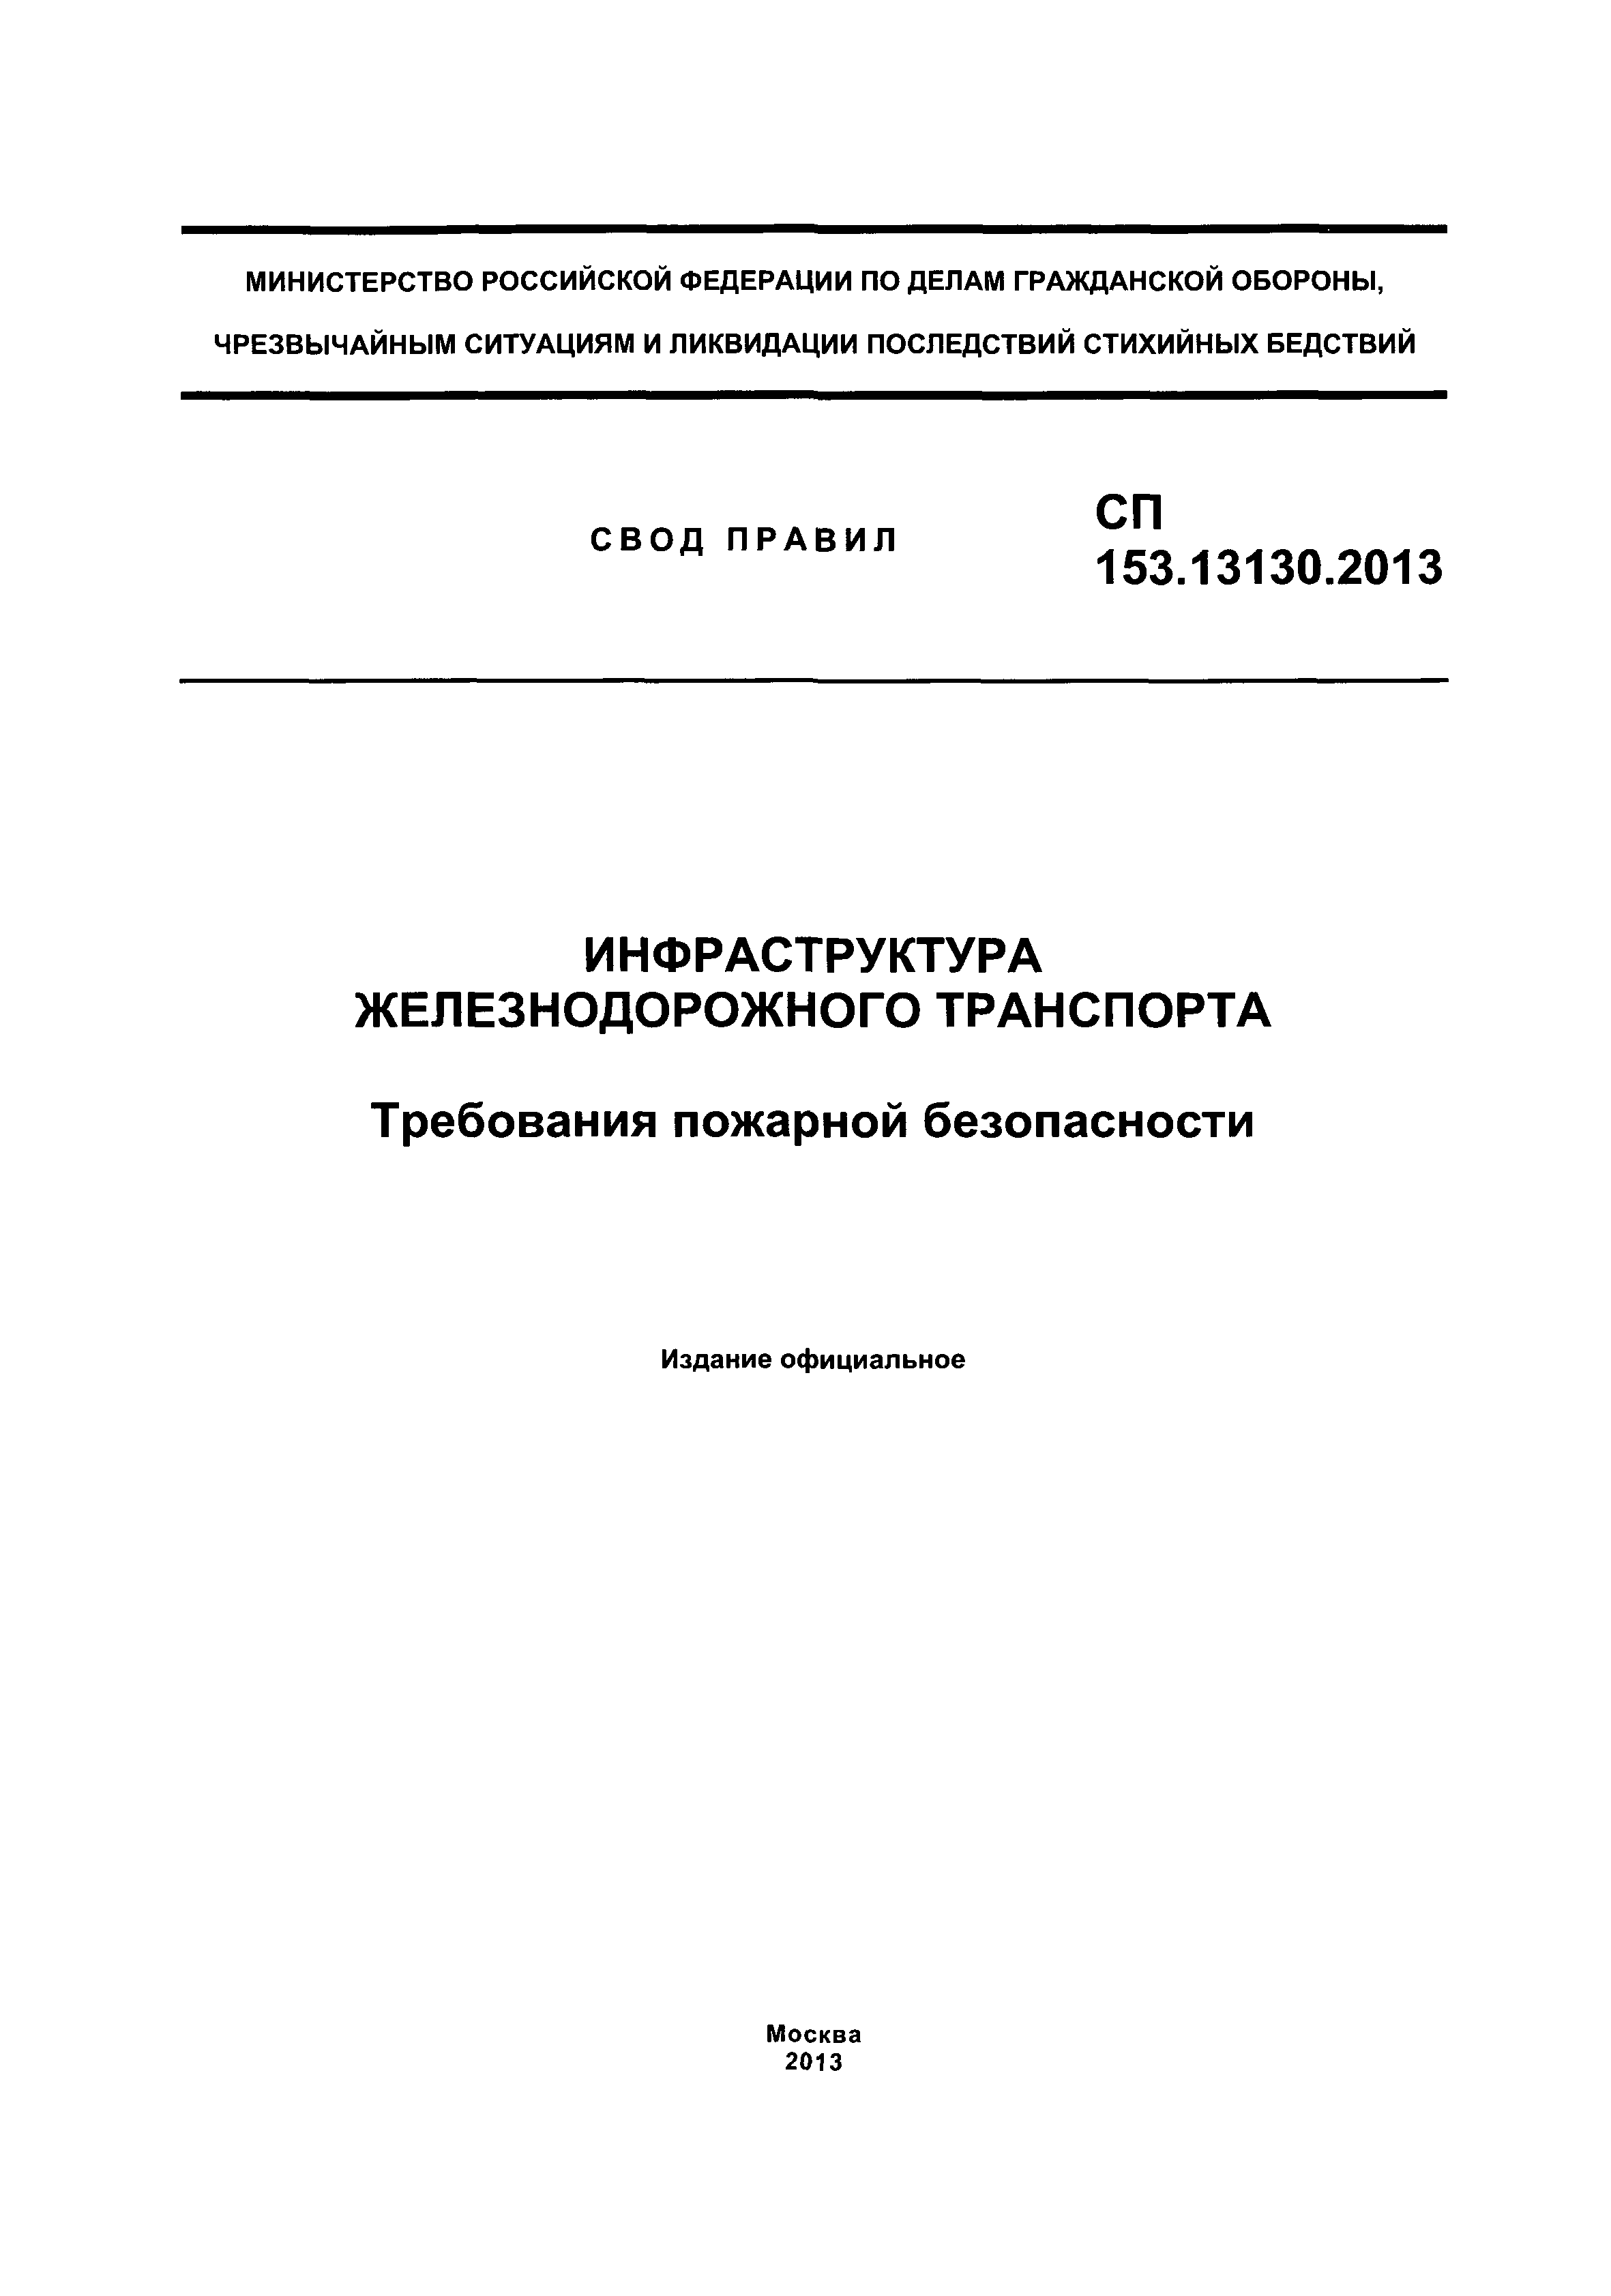 СП 153.13130.2013